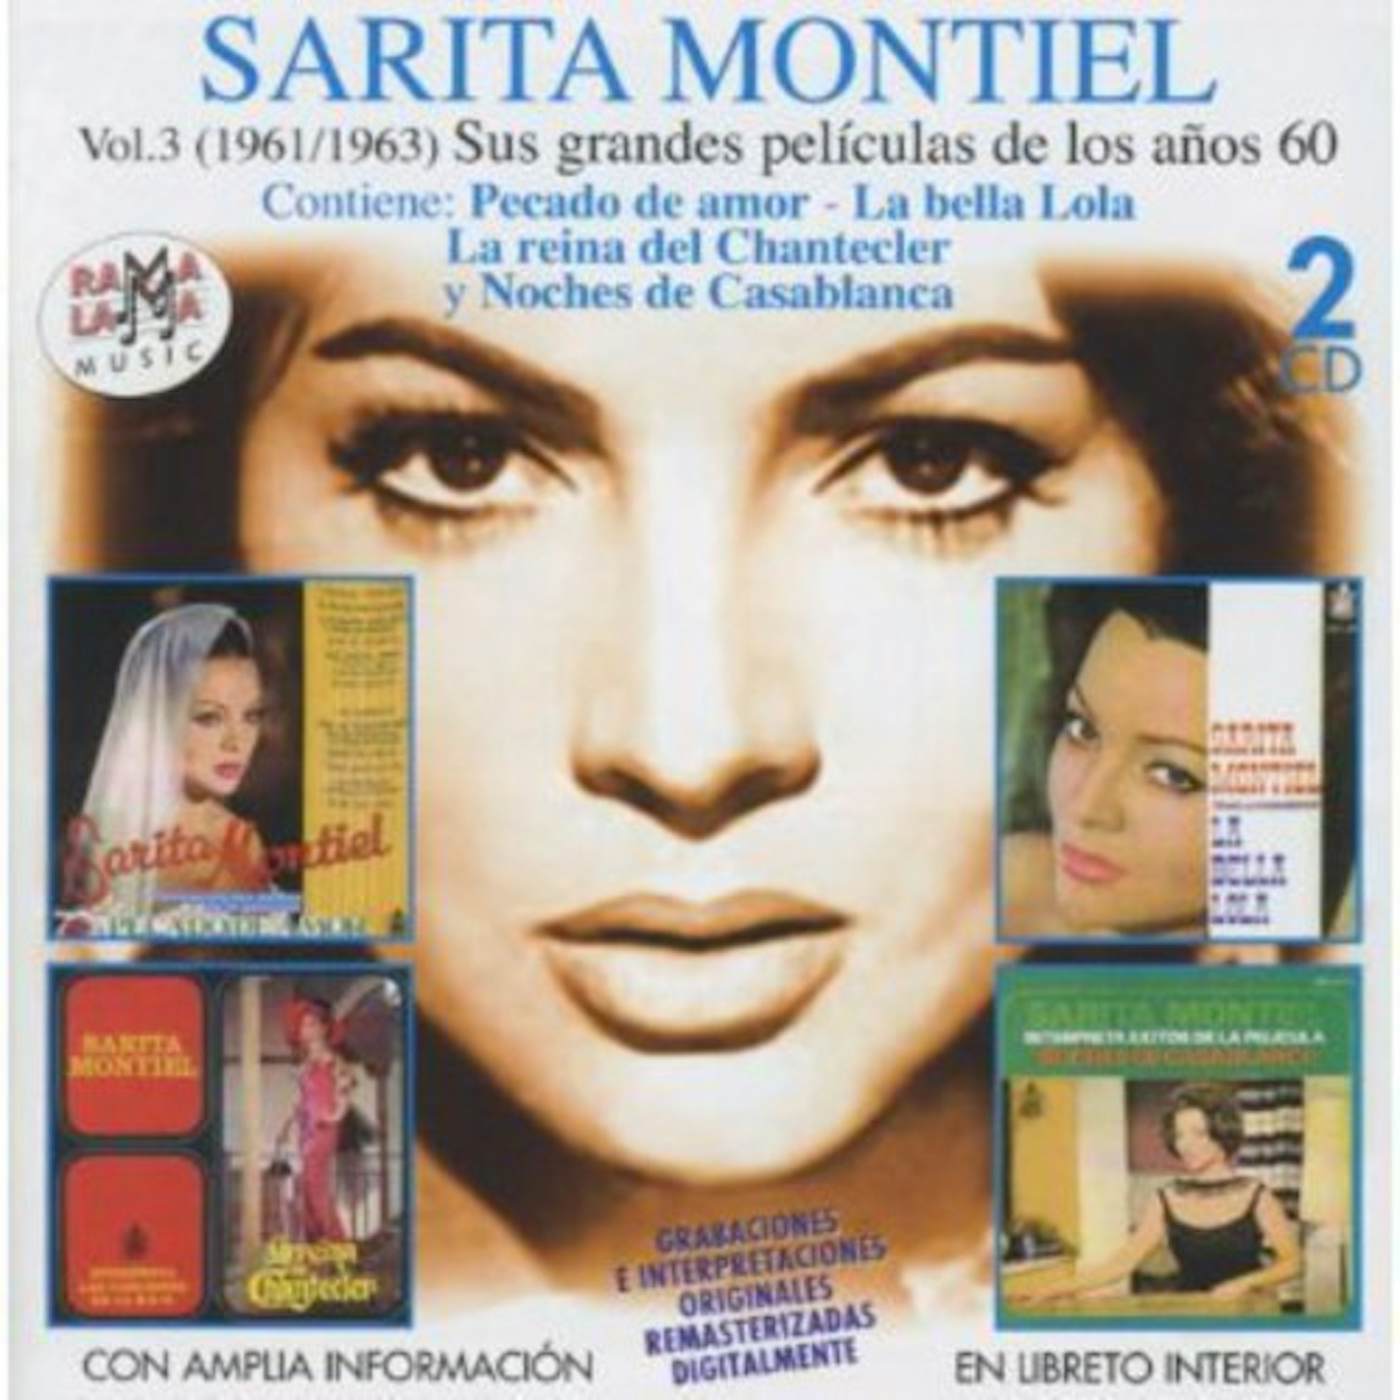 Sara Montiel VOL. 3-1961-63 SUS GRANDES PELICULAS DE LOS 60 CD